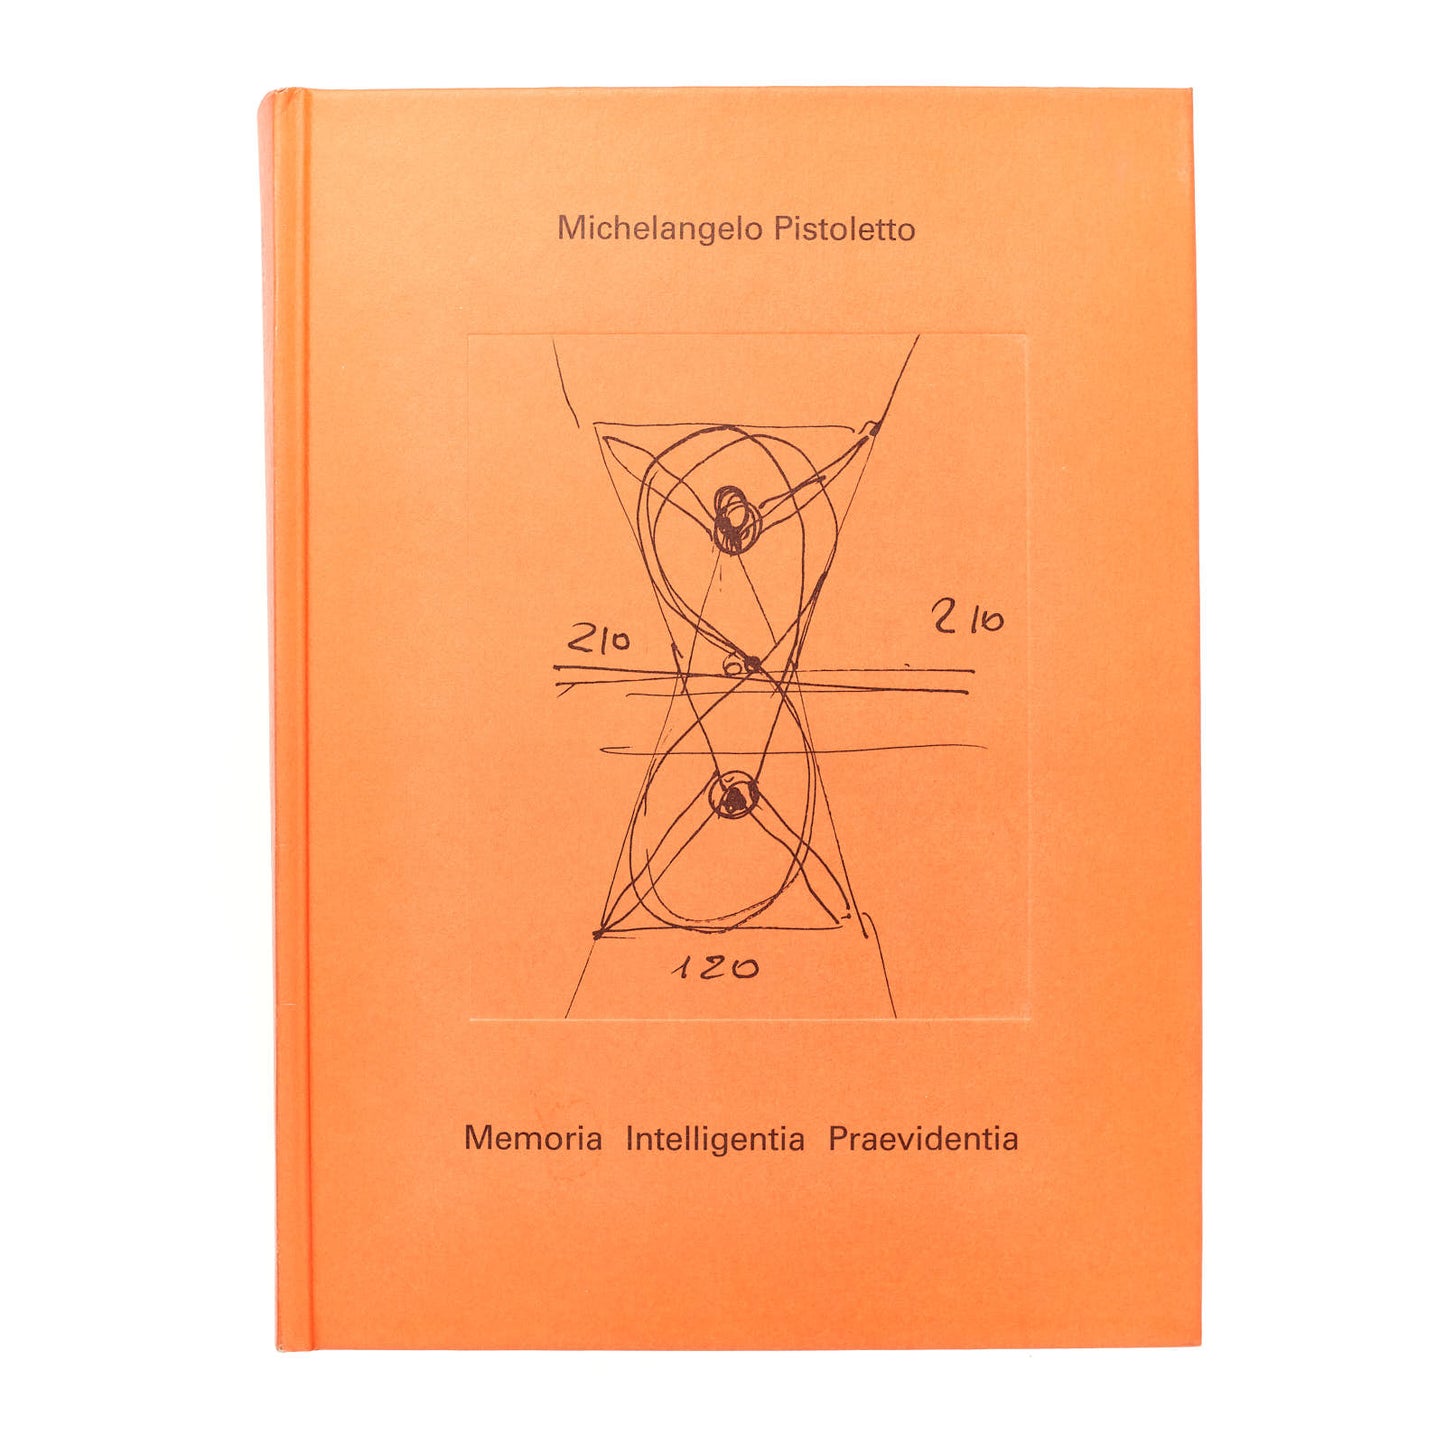 Michelangelo Pistoletto. Memoria Intelligentia Praevidentia (exhibition catalogue)